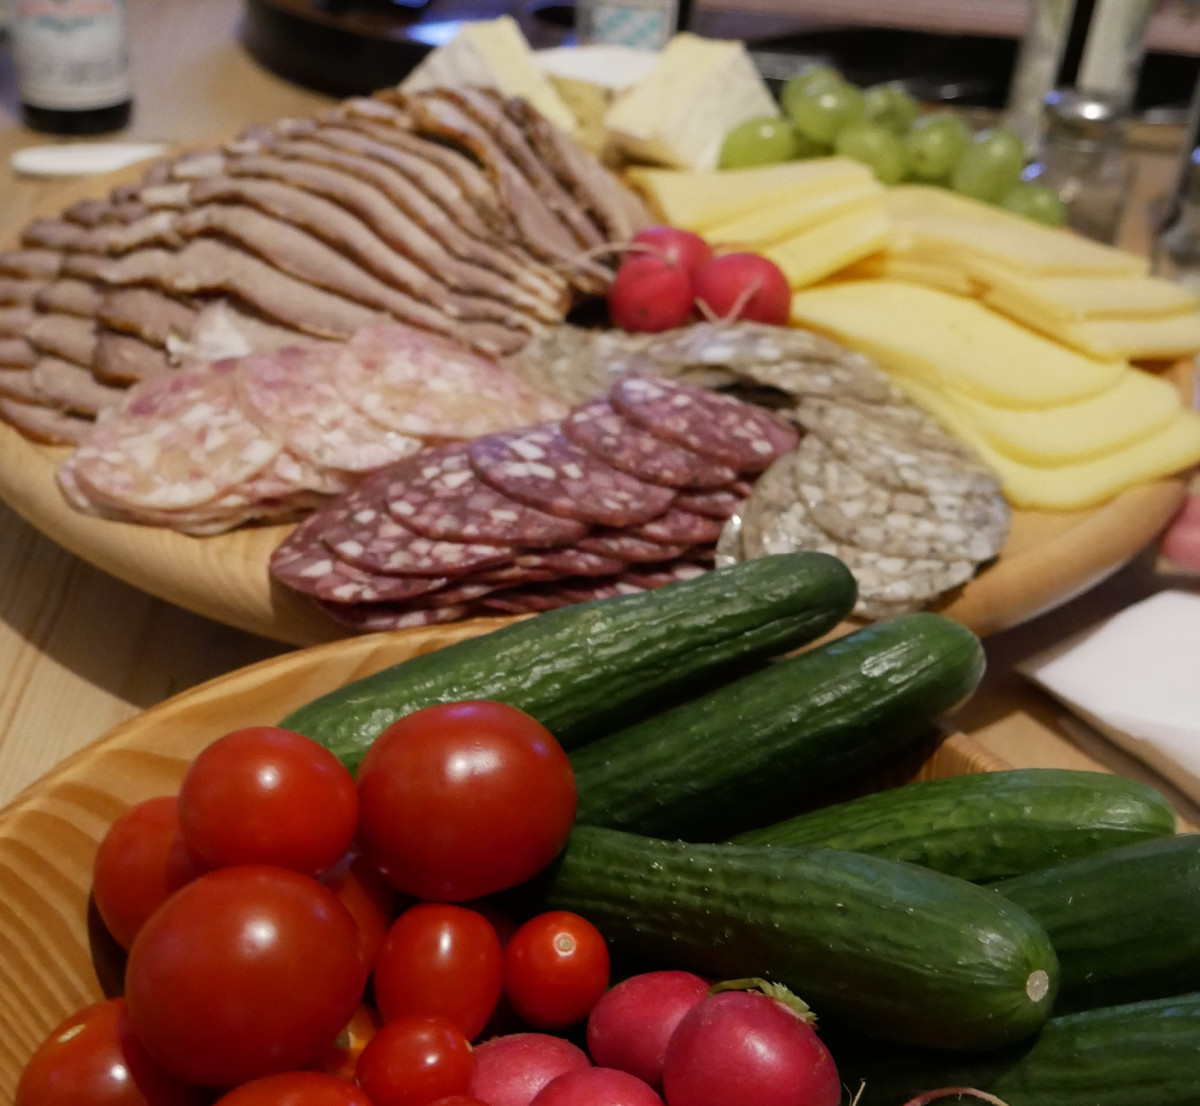 Wurst, Käse und Gemüse auf dem Tisch